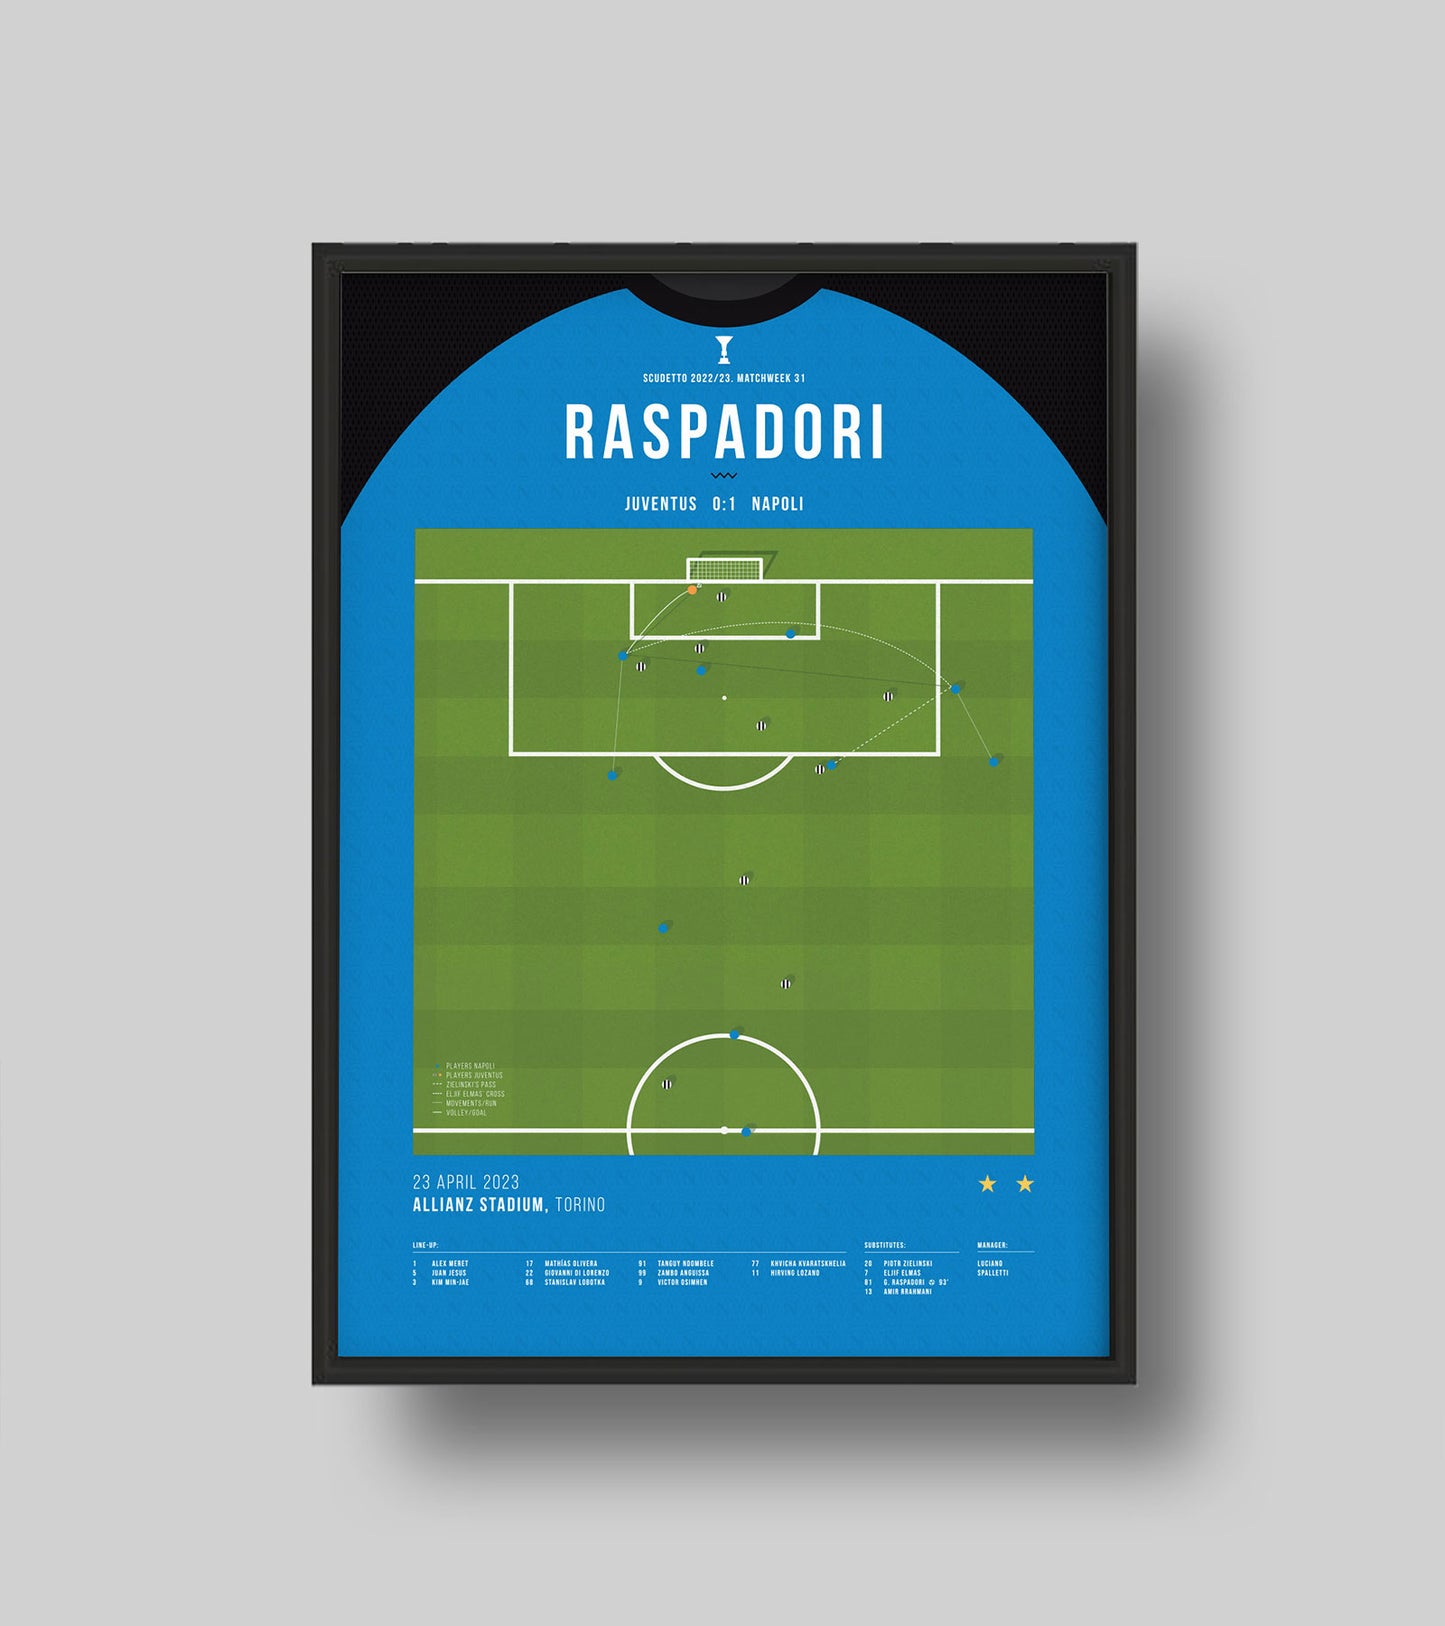 Napoli gets closer to the Scudetto thanks to Raspadori last-gasp winner